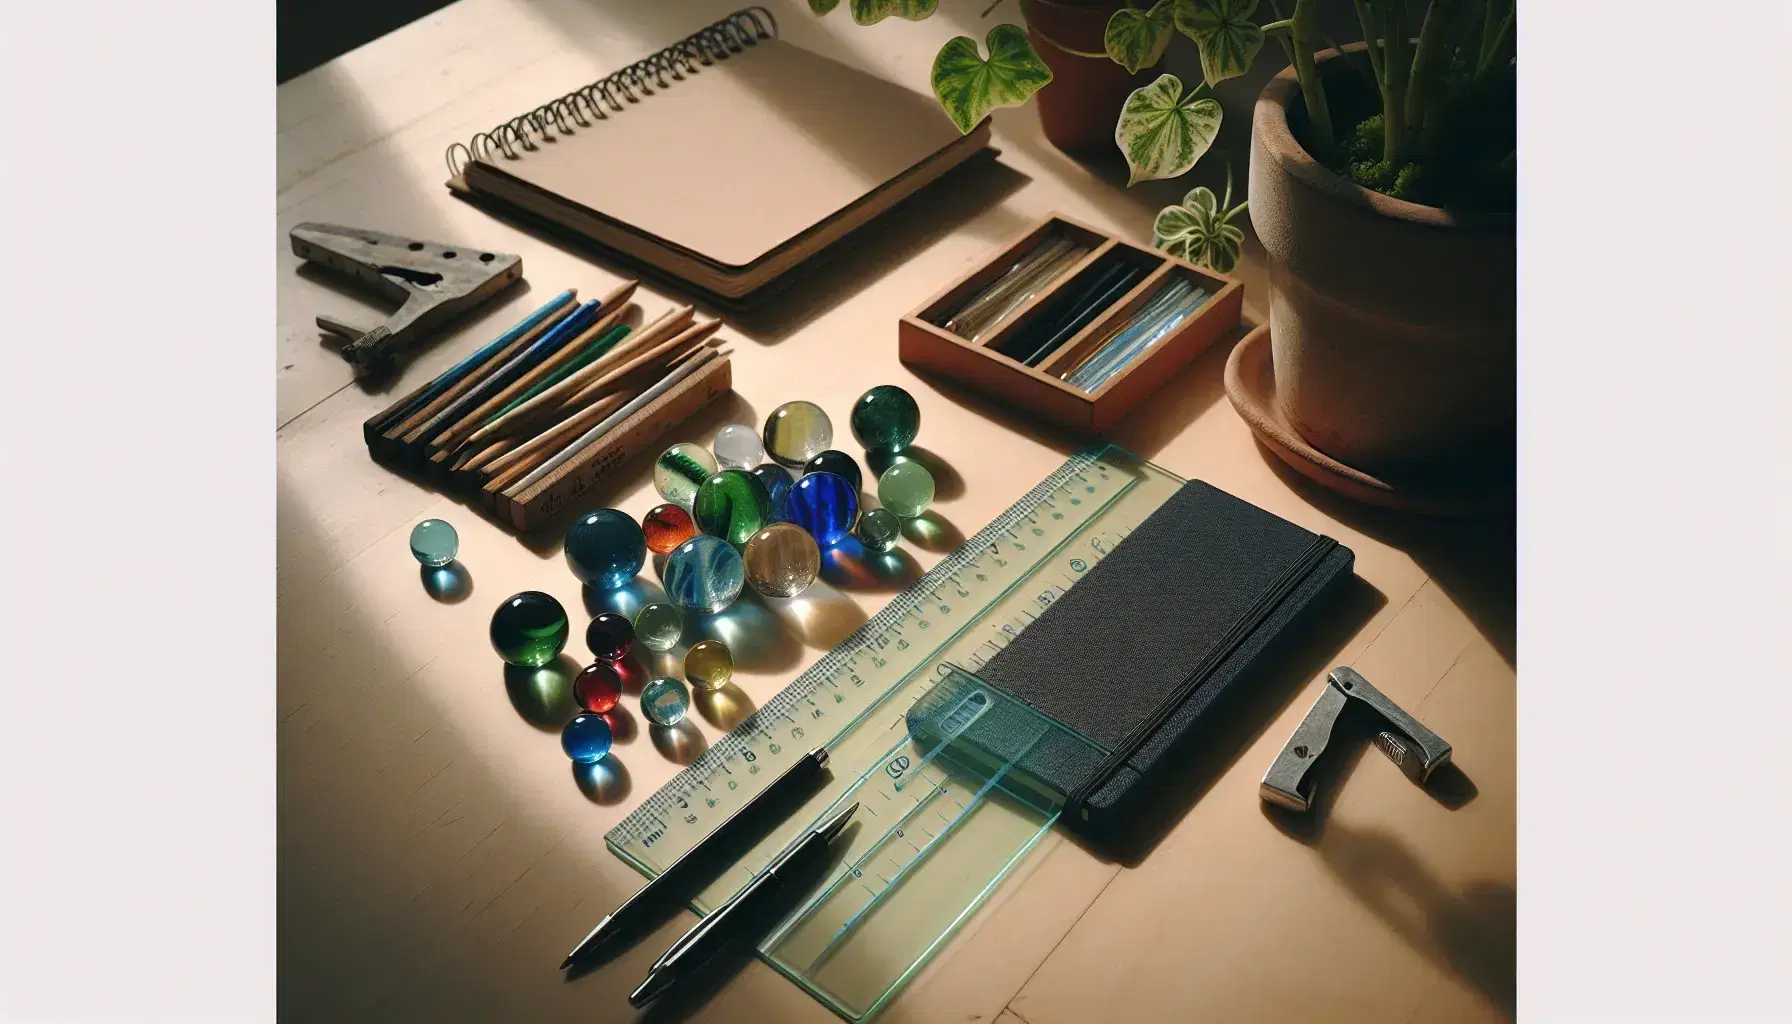 Mesa de madera clara con canicas de colores, regla plástica, cuaderno azul abierto y bolígrafo negro, planta desenfocada al fondo.